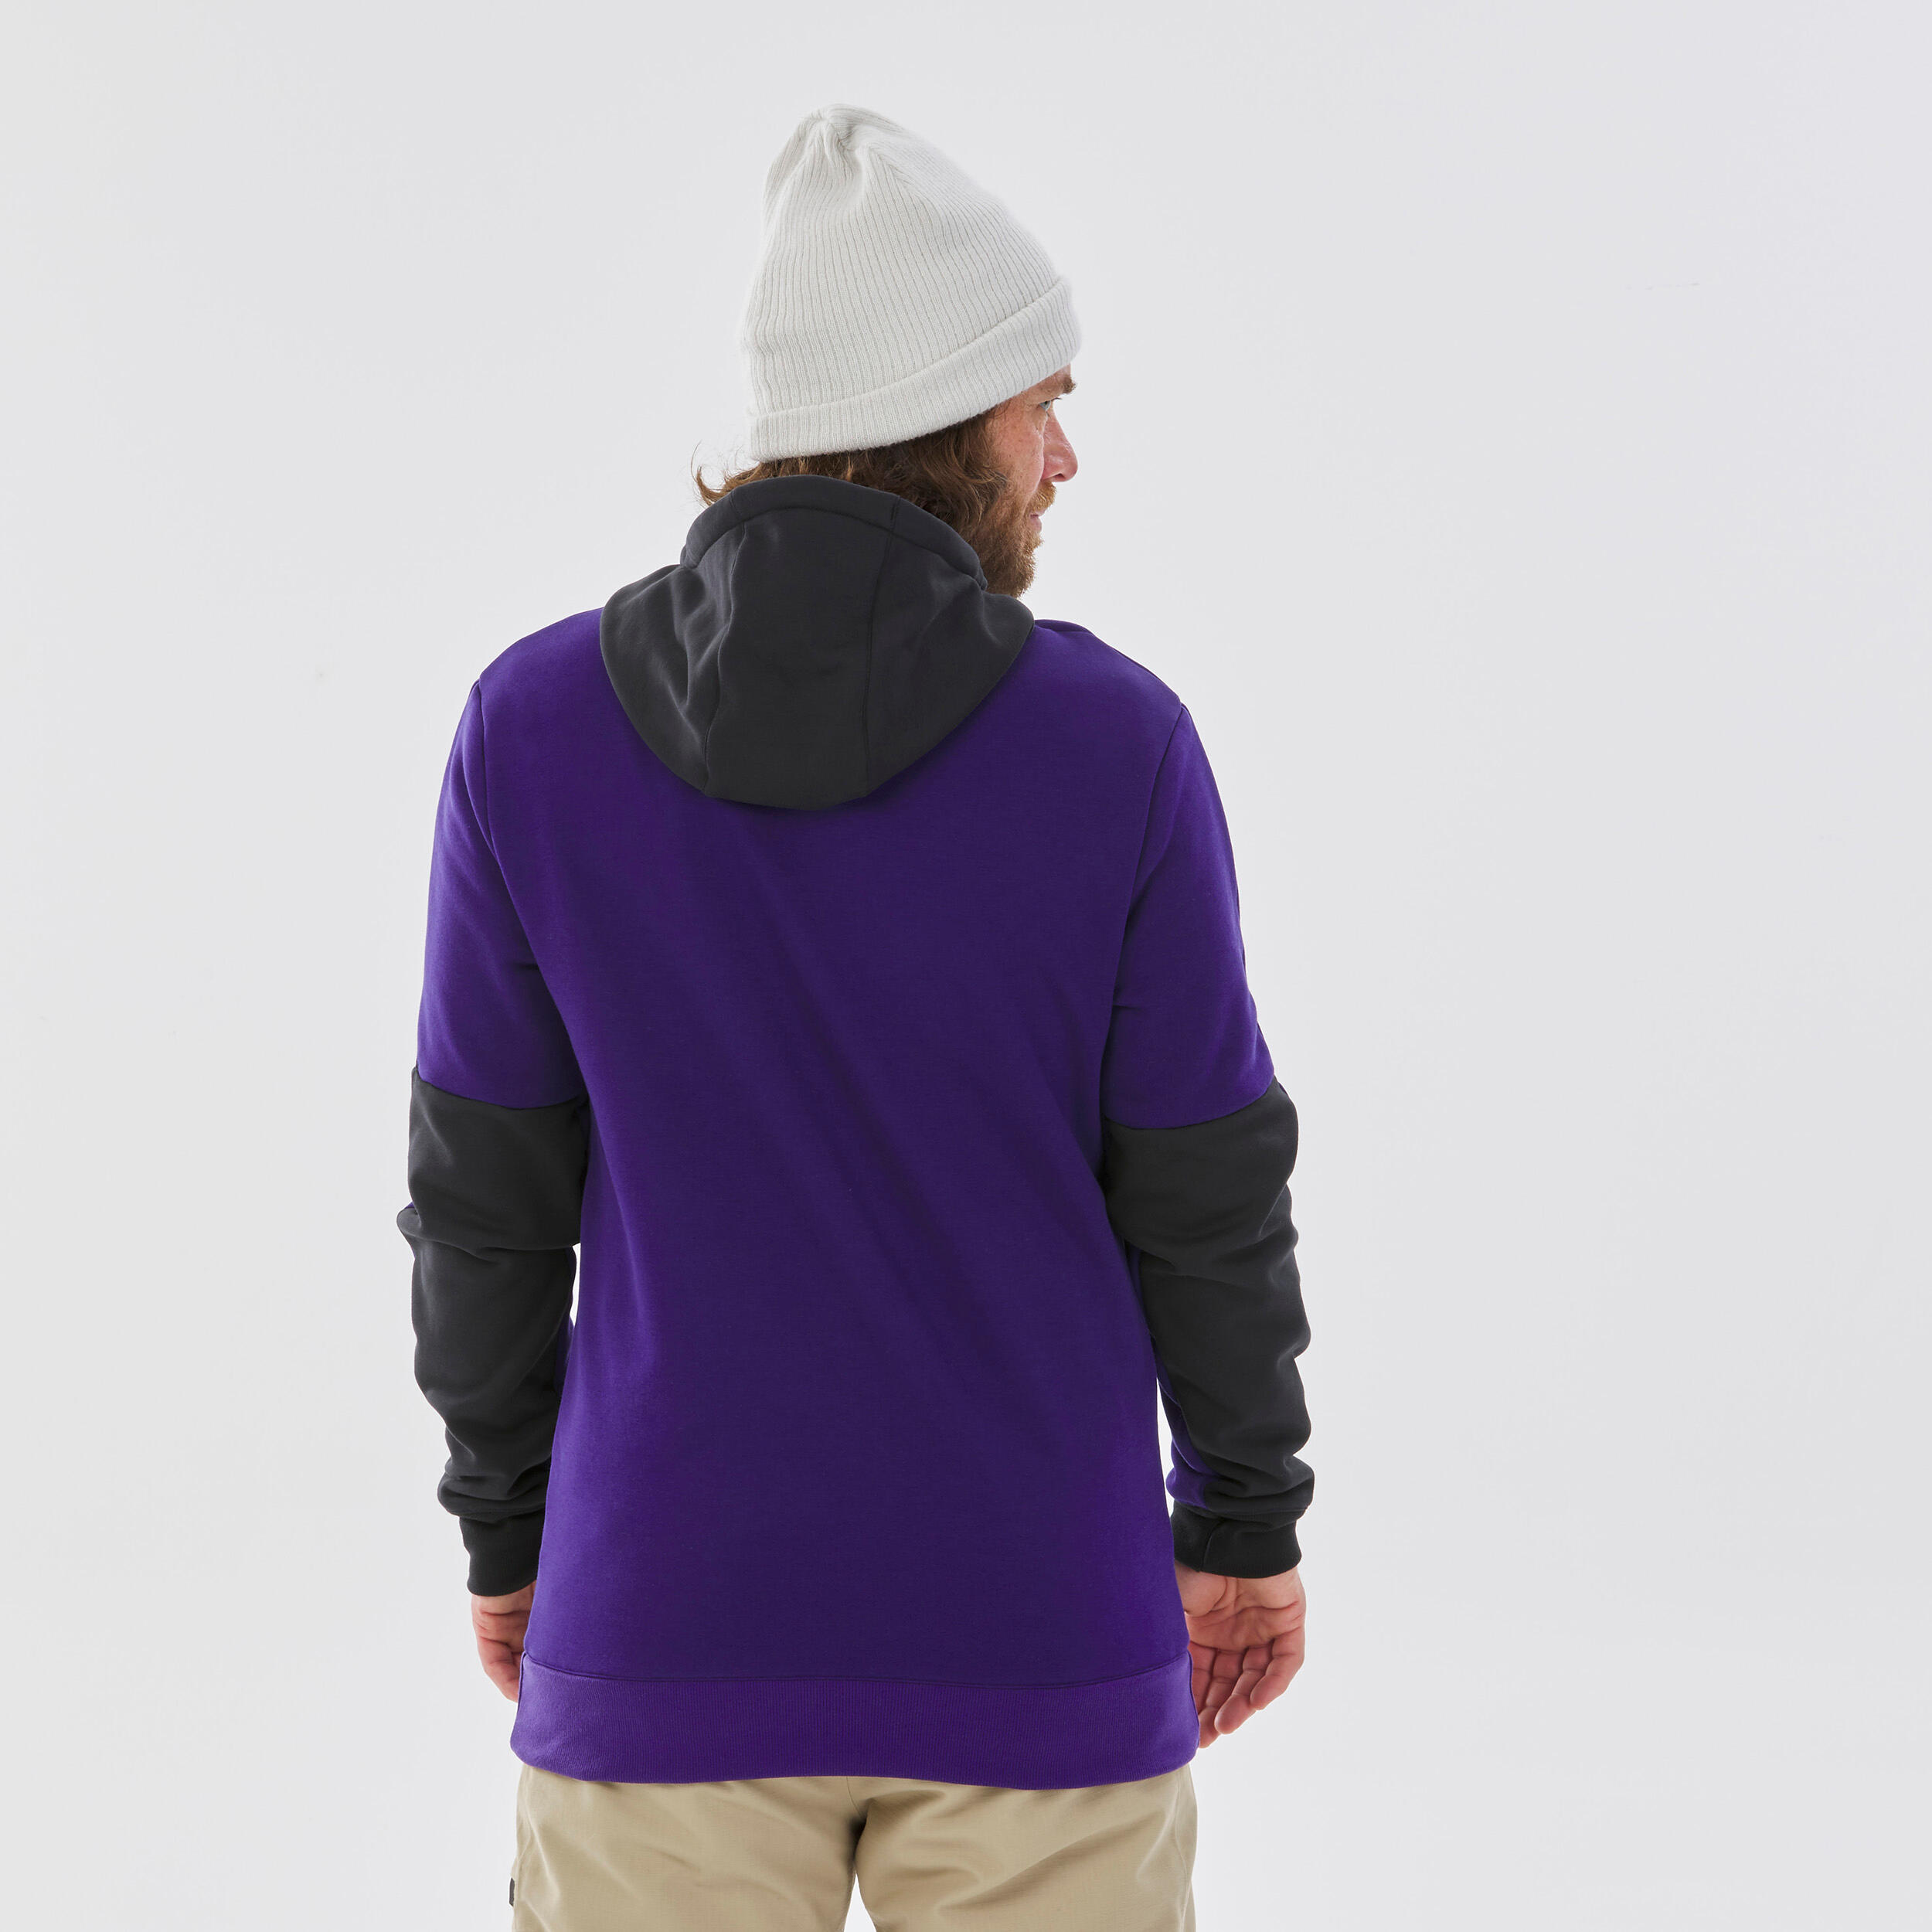 Men's Hooded Snowboard Sweatshirt - SNB HDY Purple 6/8